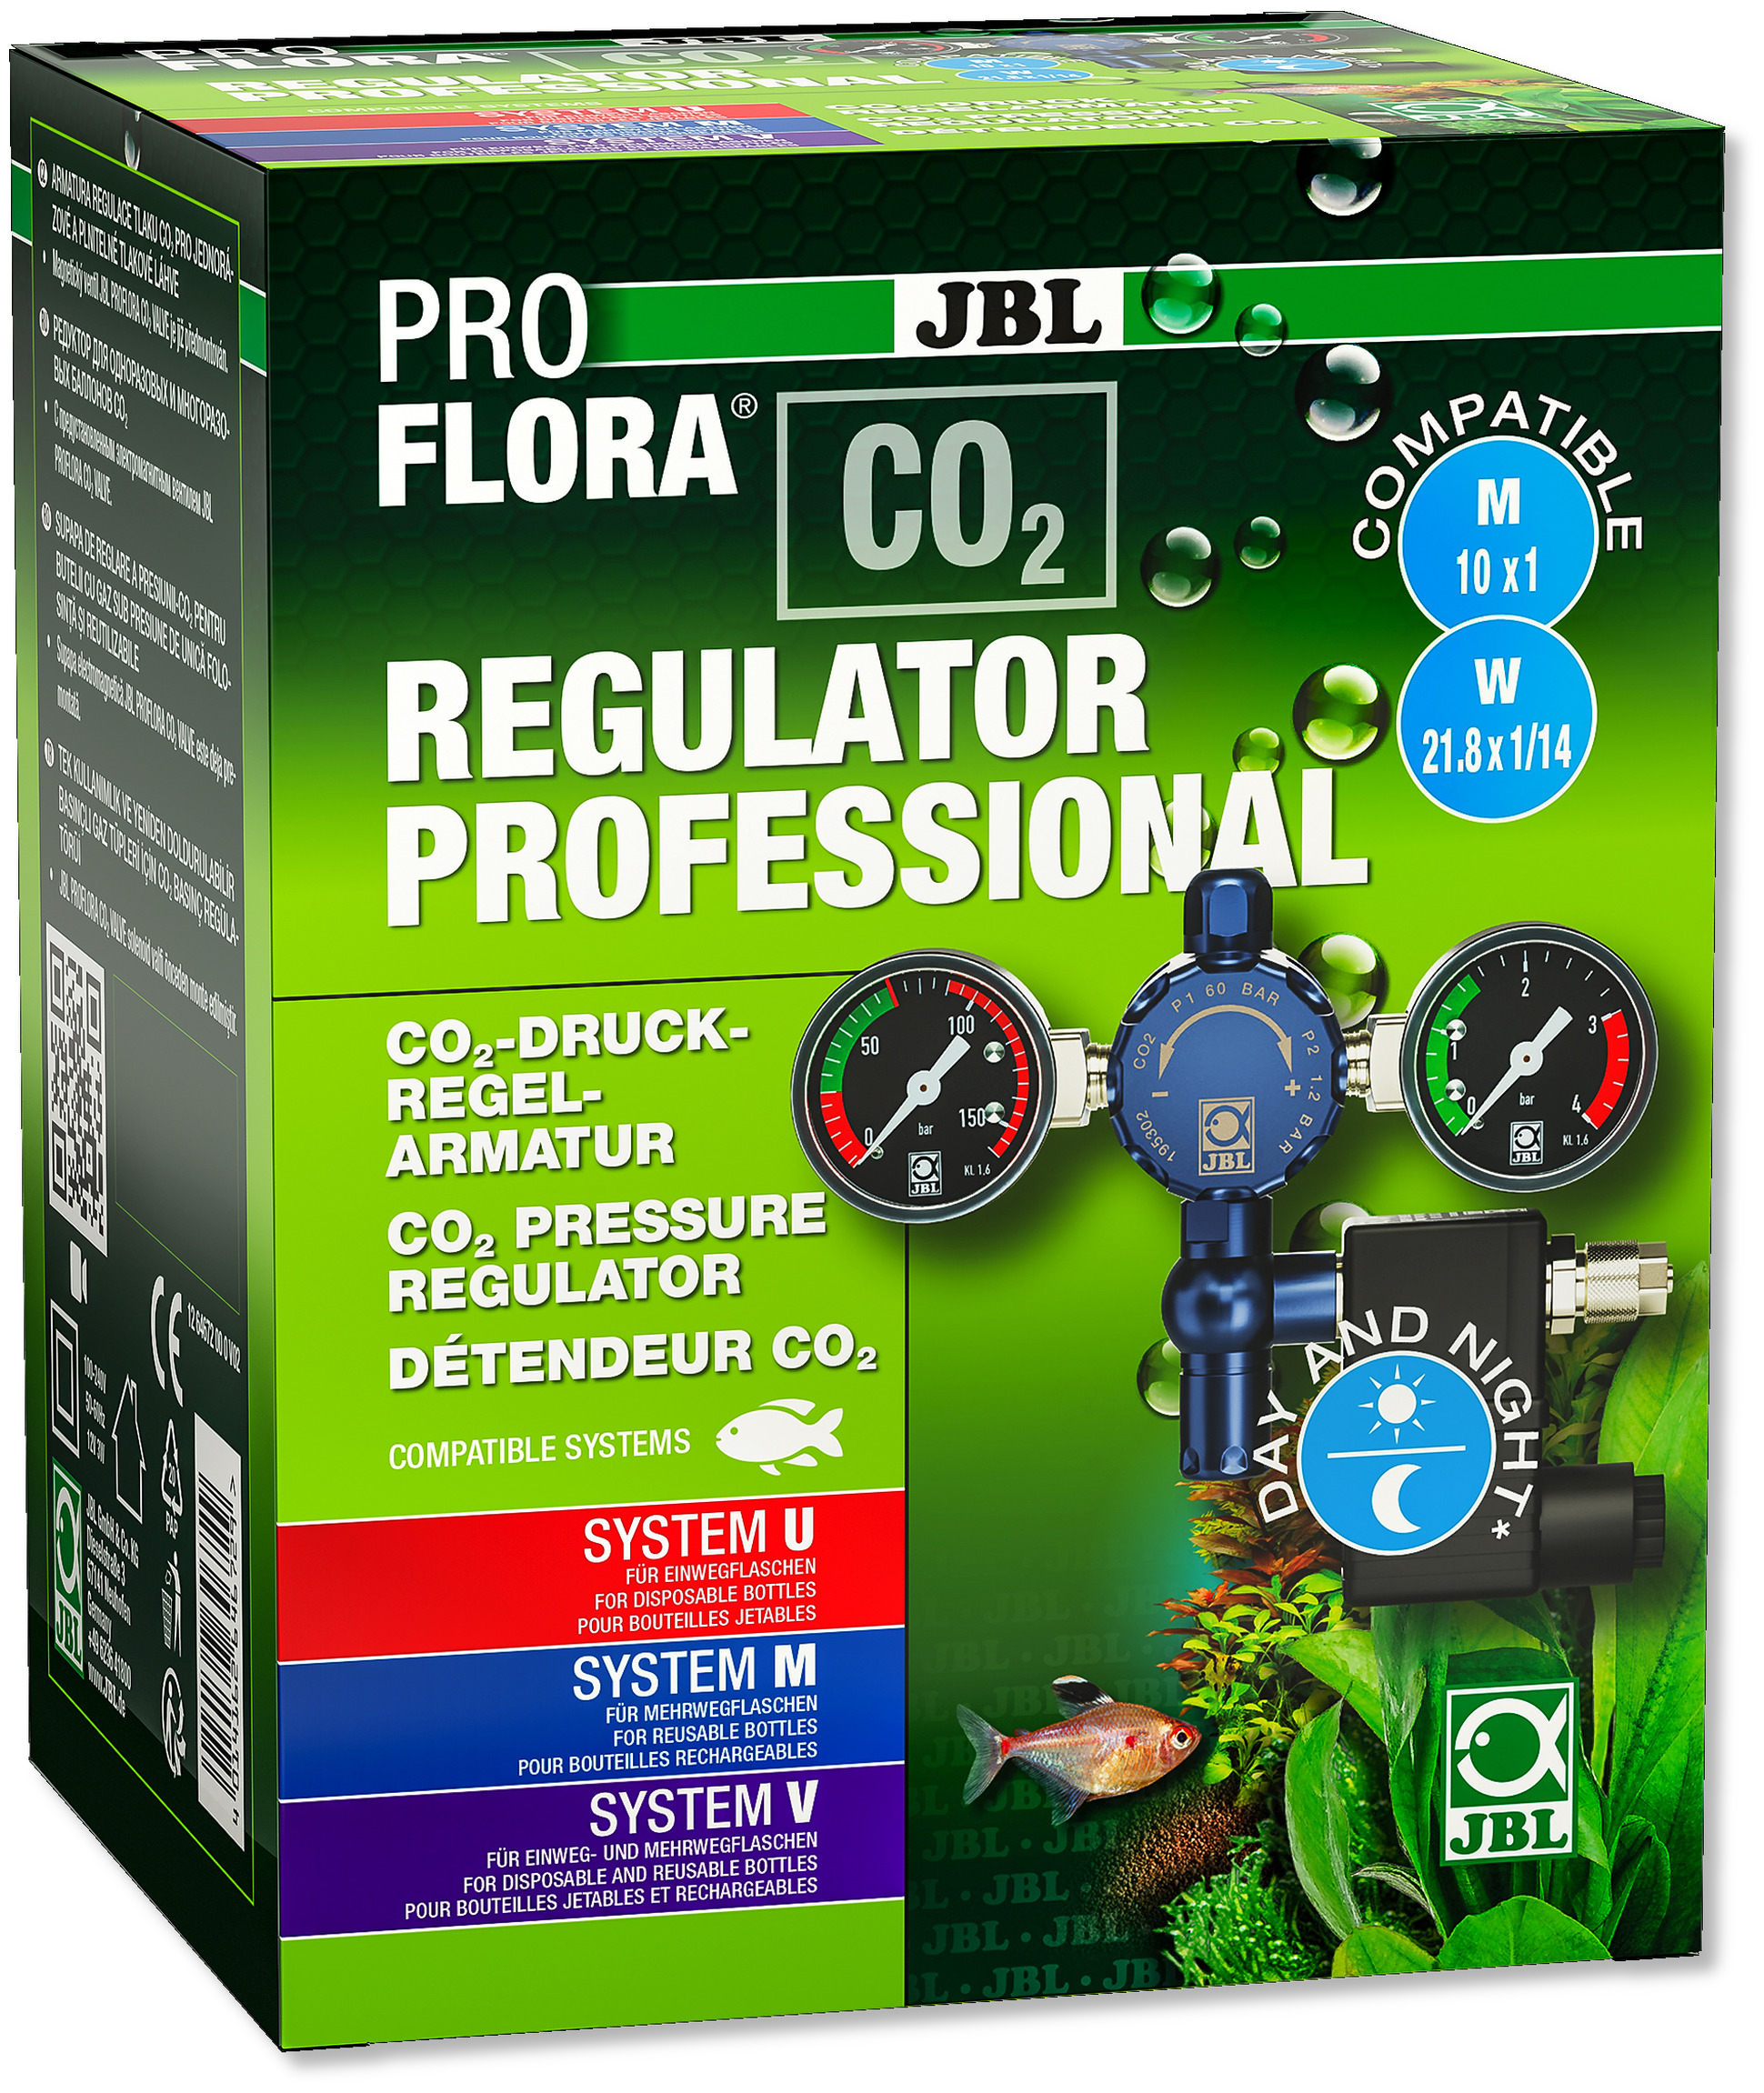 JBL ProFlora CO2 Regulator Professional détendeur double-manomètre avec électrovanne pour bouteilles de CO2 jetables et rechargeables